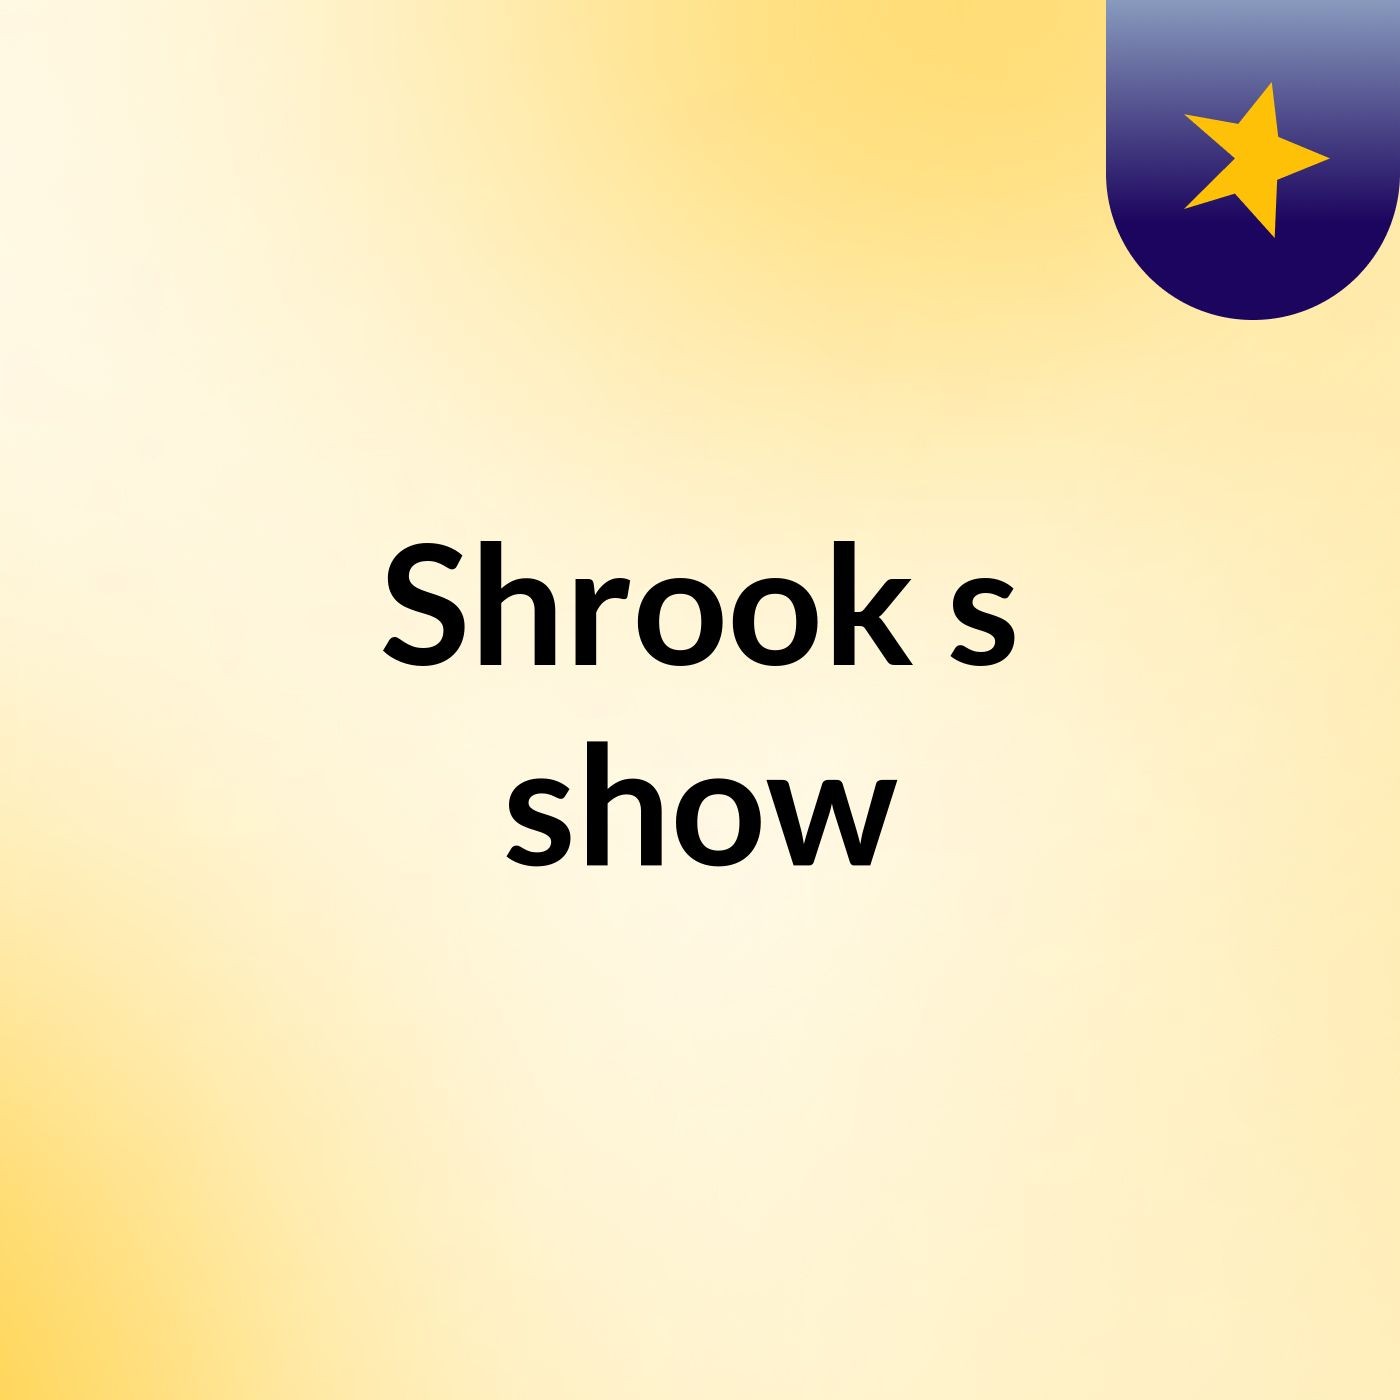 Shrook's show